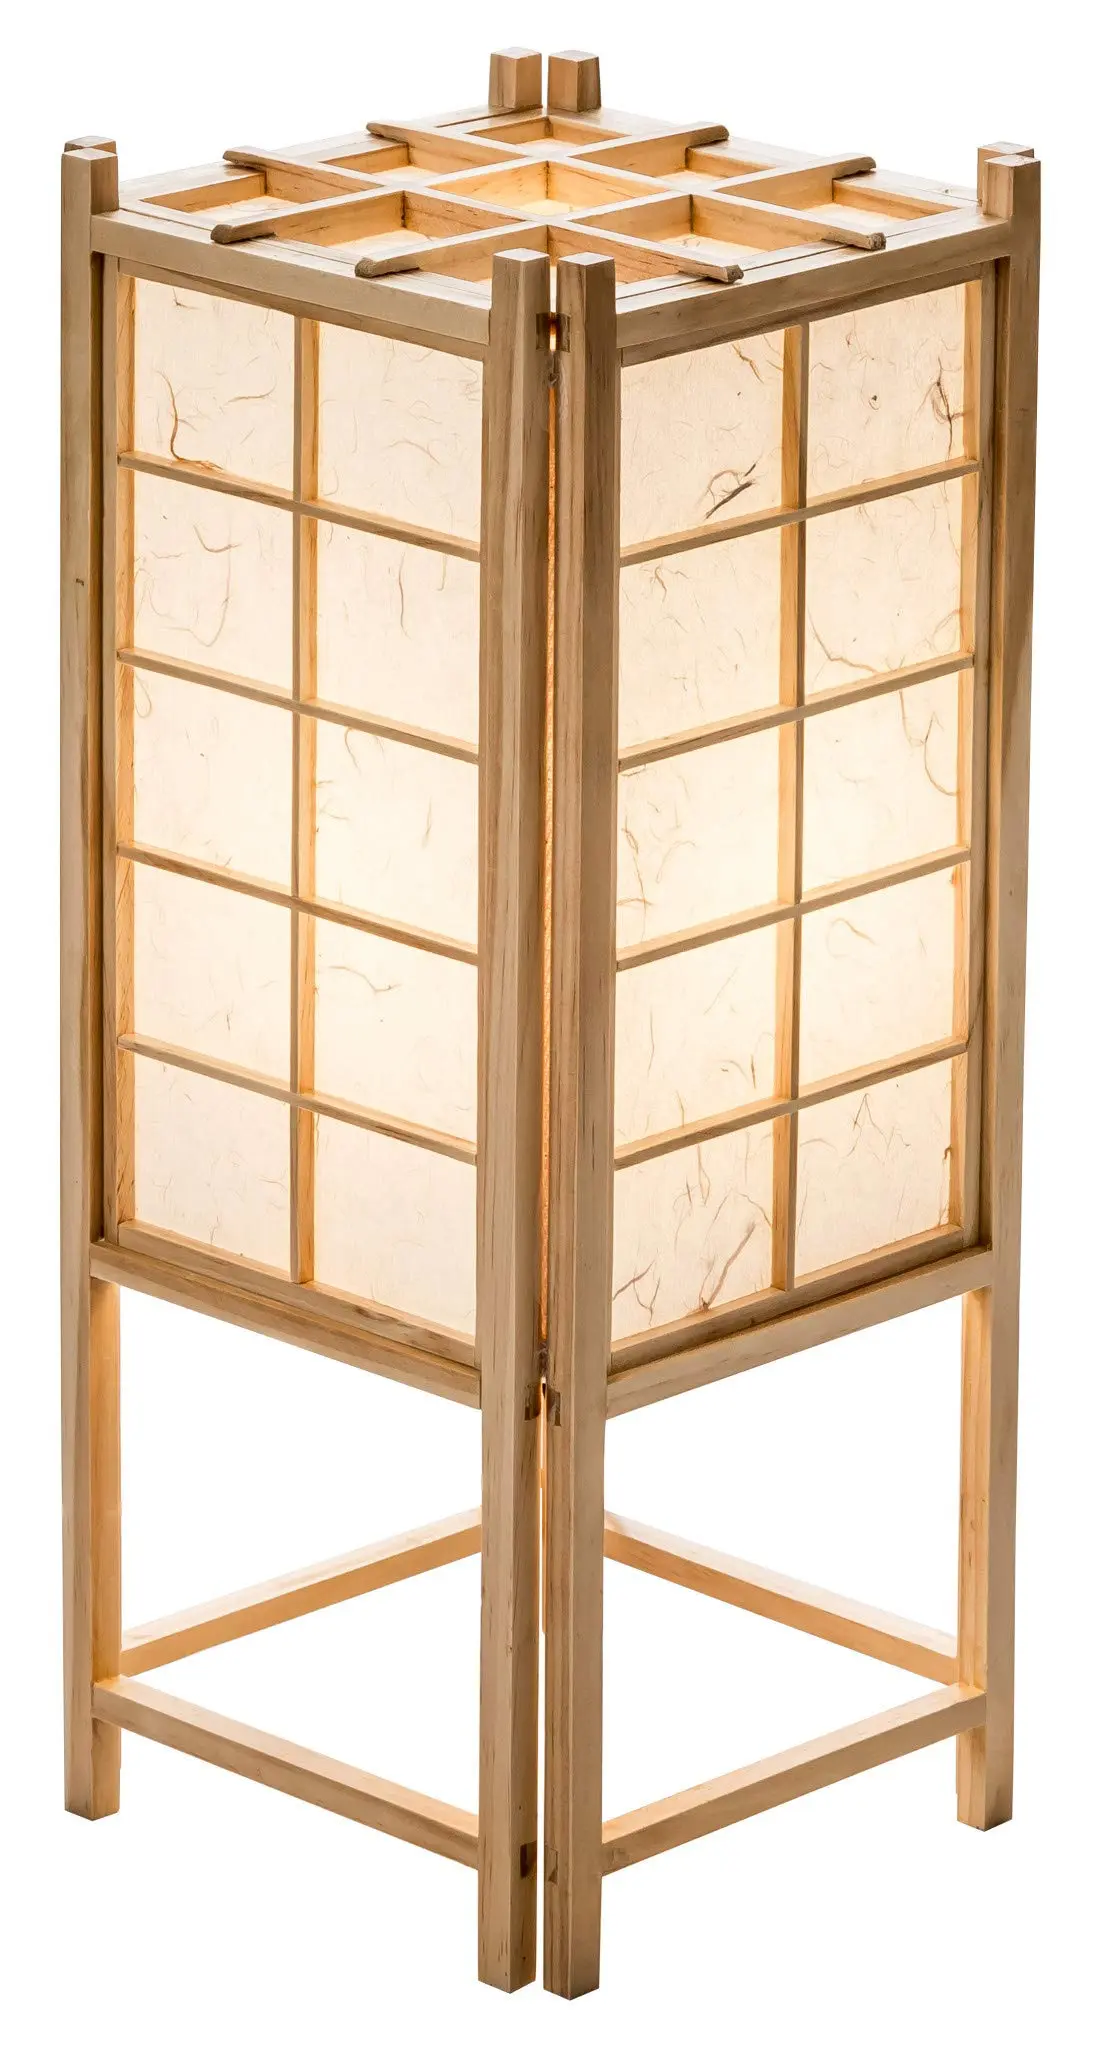 lampara japonesa madera - Cómo se llama la lámpara japonesa